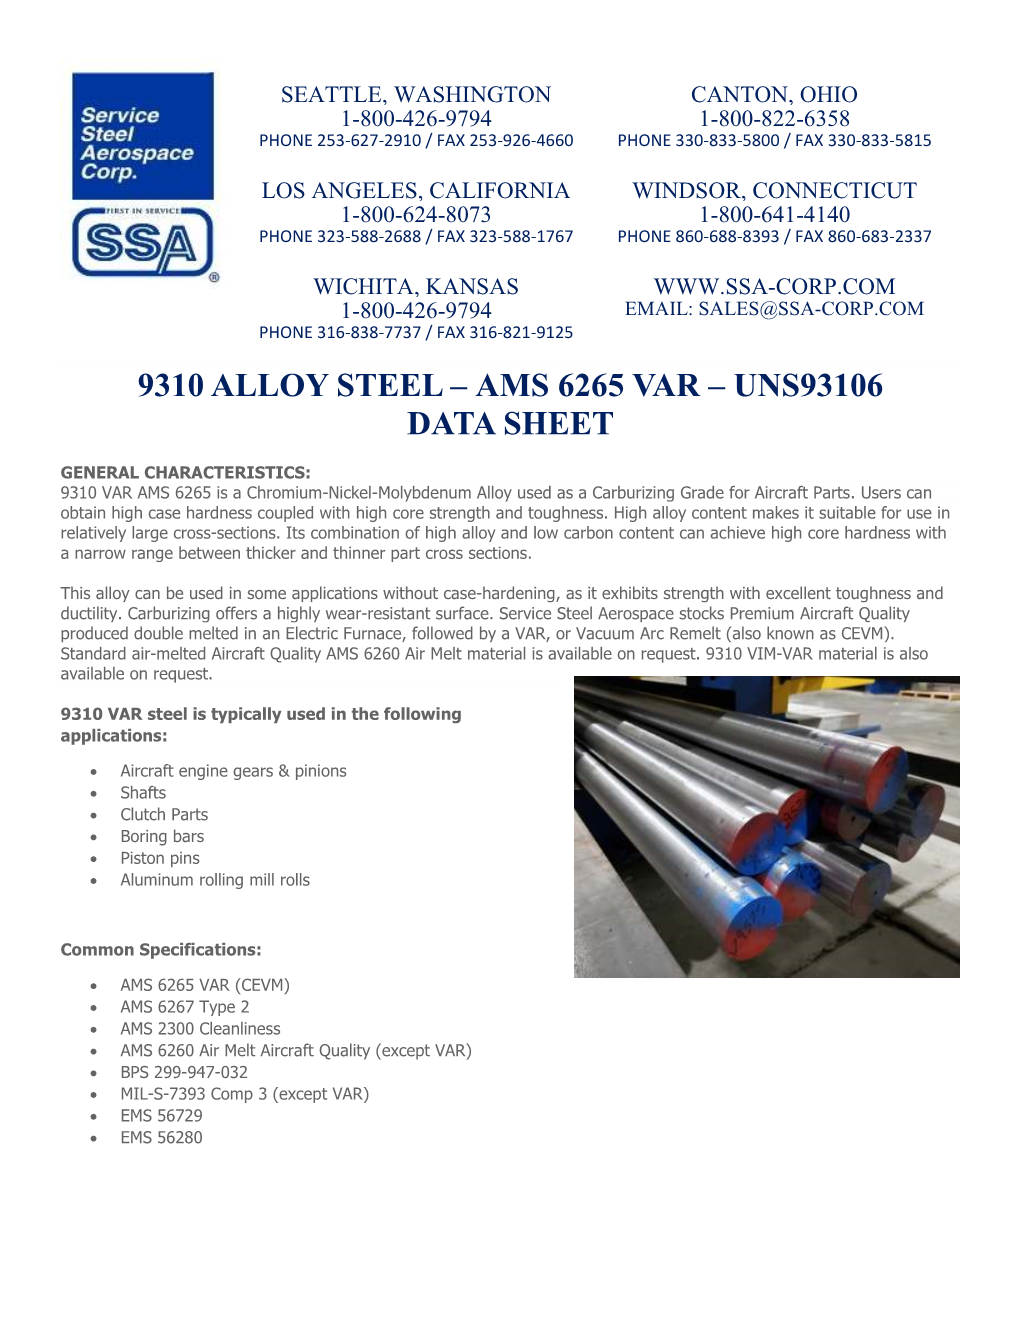 Data Sheet 9310 Alloy Steel